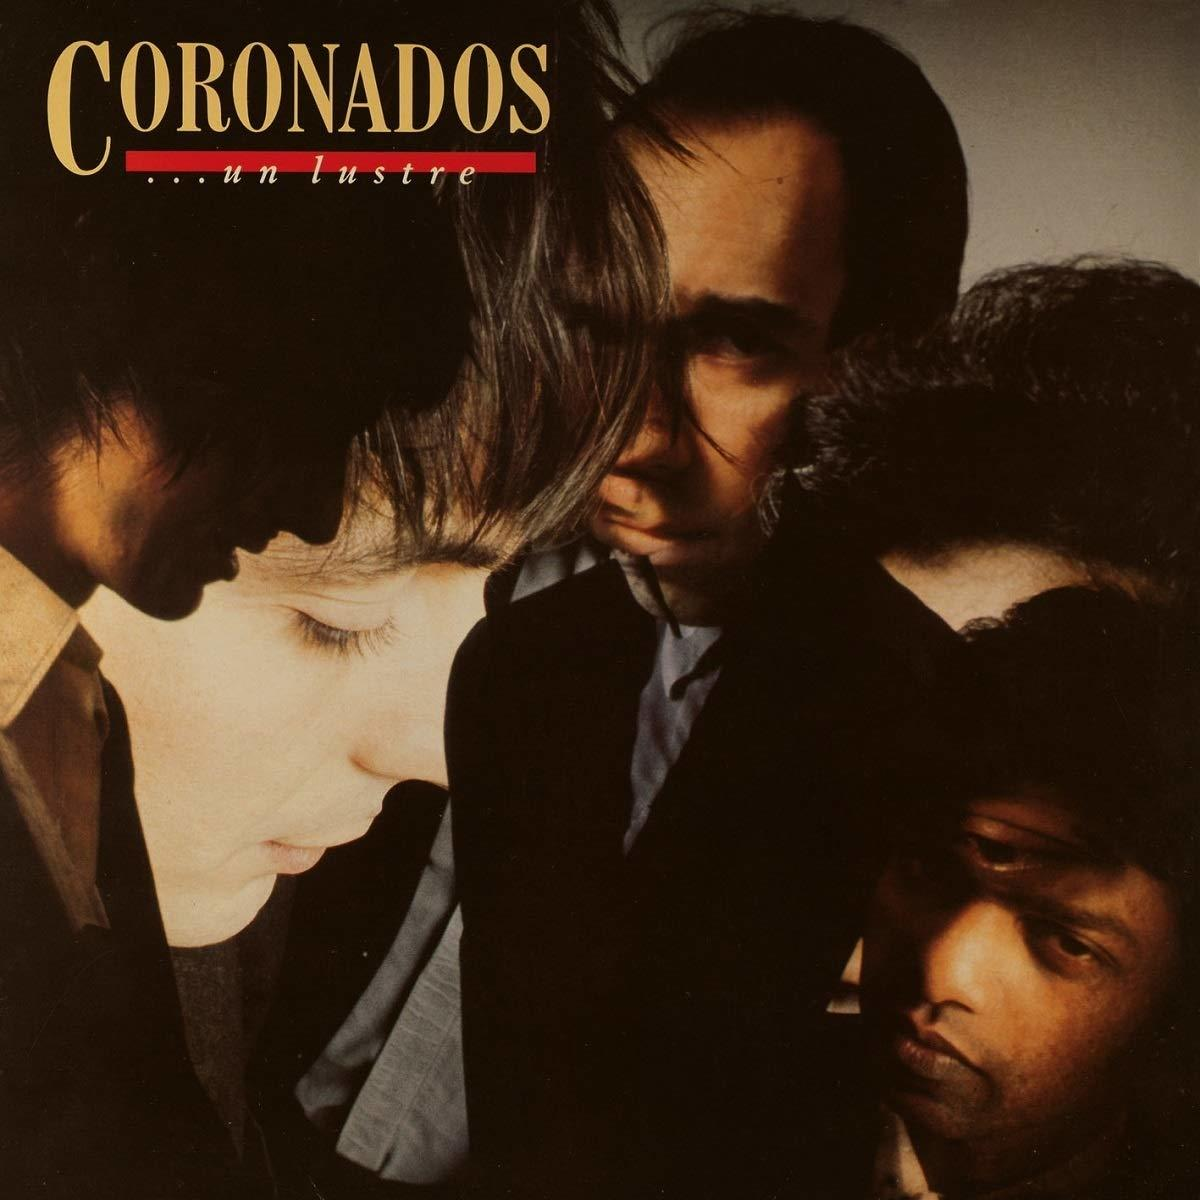 UN LUSTRE Coronados (Vinyl) - - The